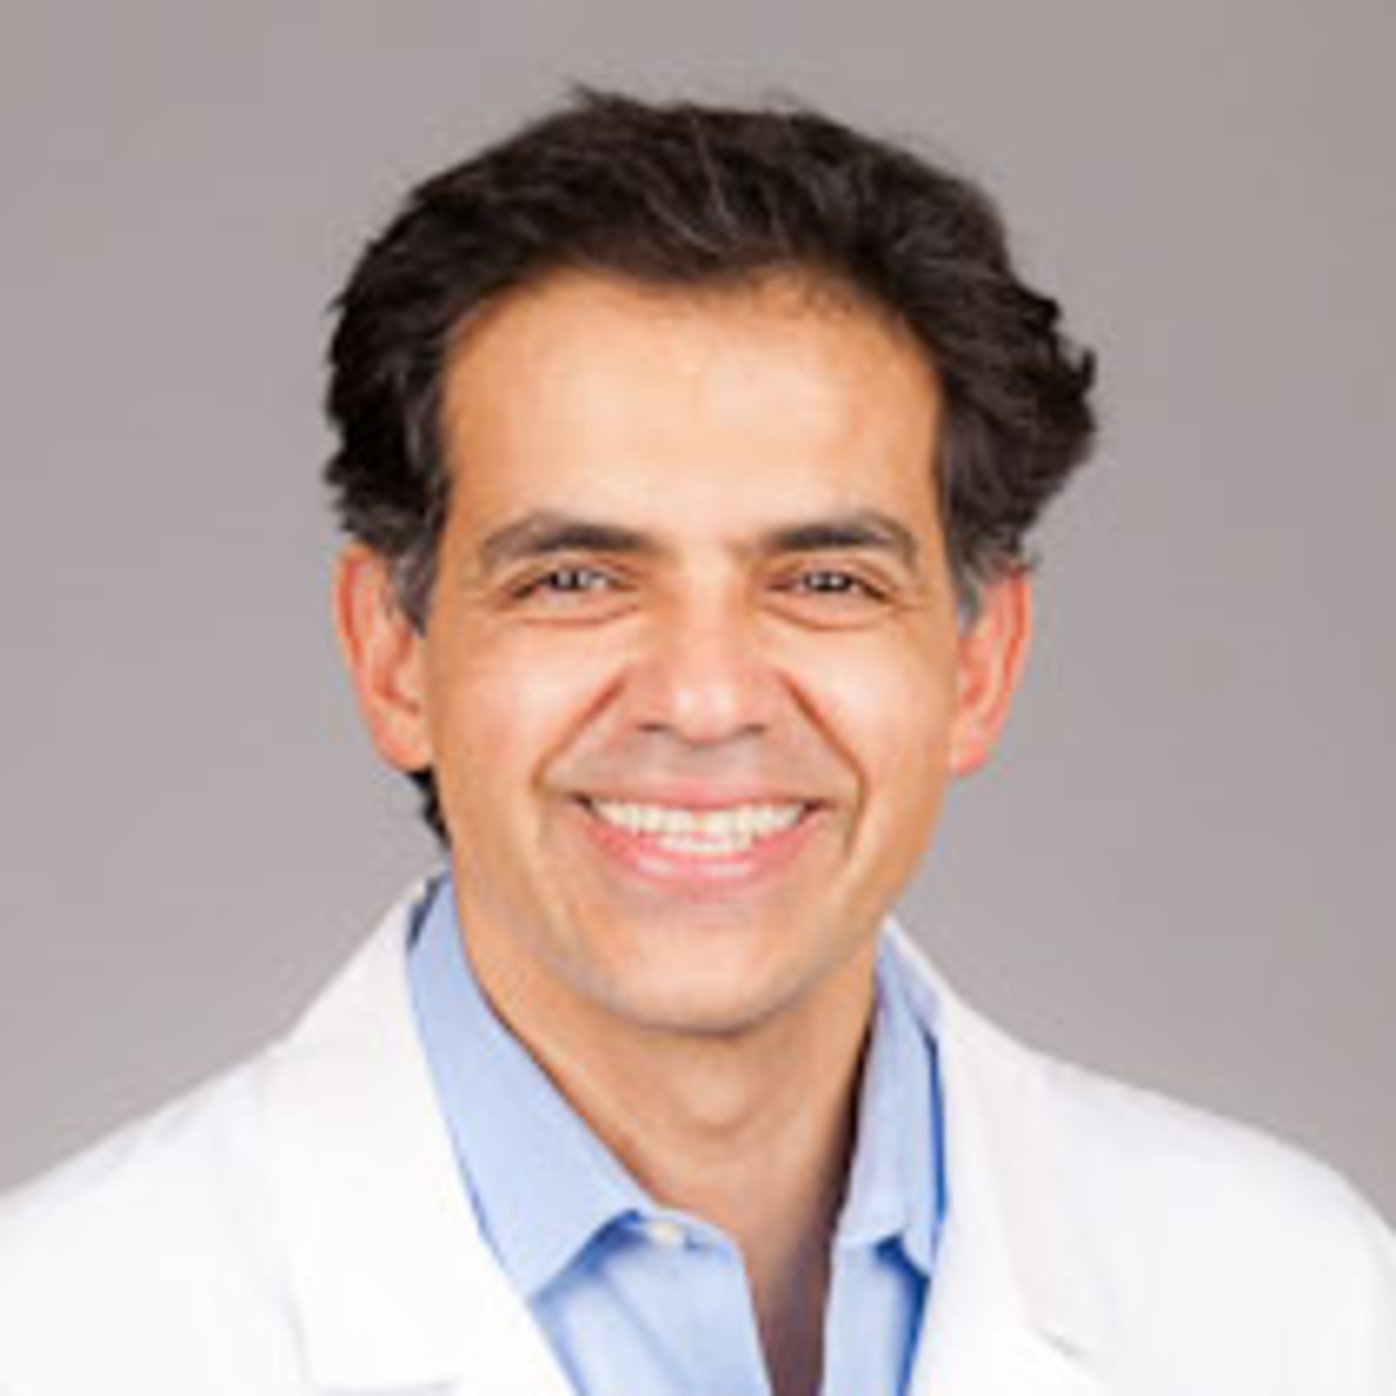 Dr. Amirhassan Bahreman